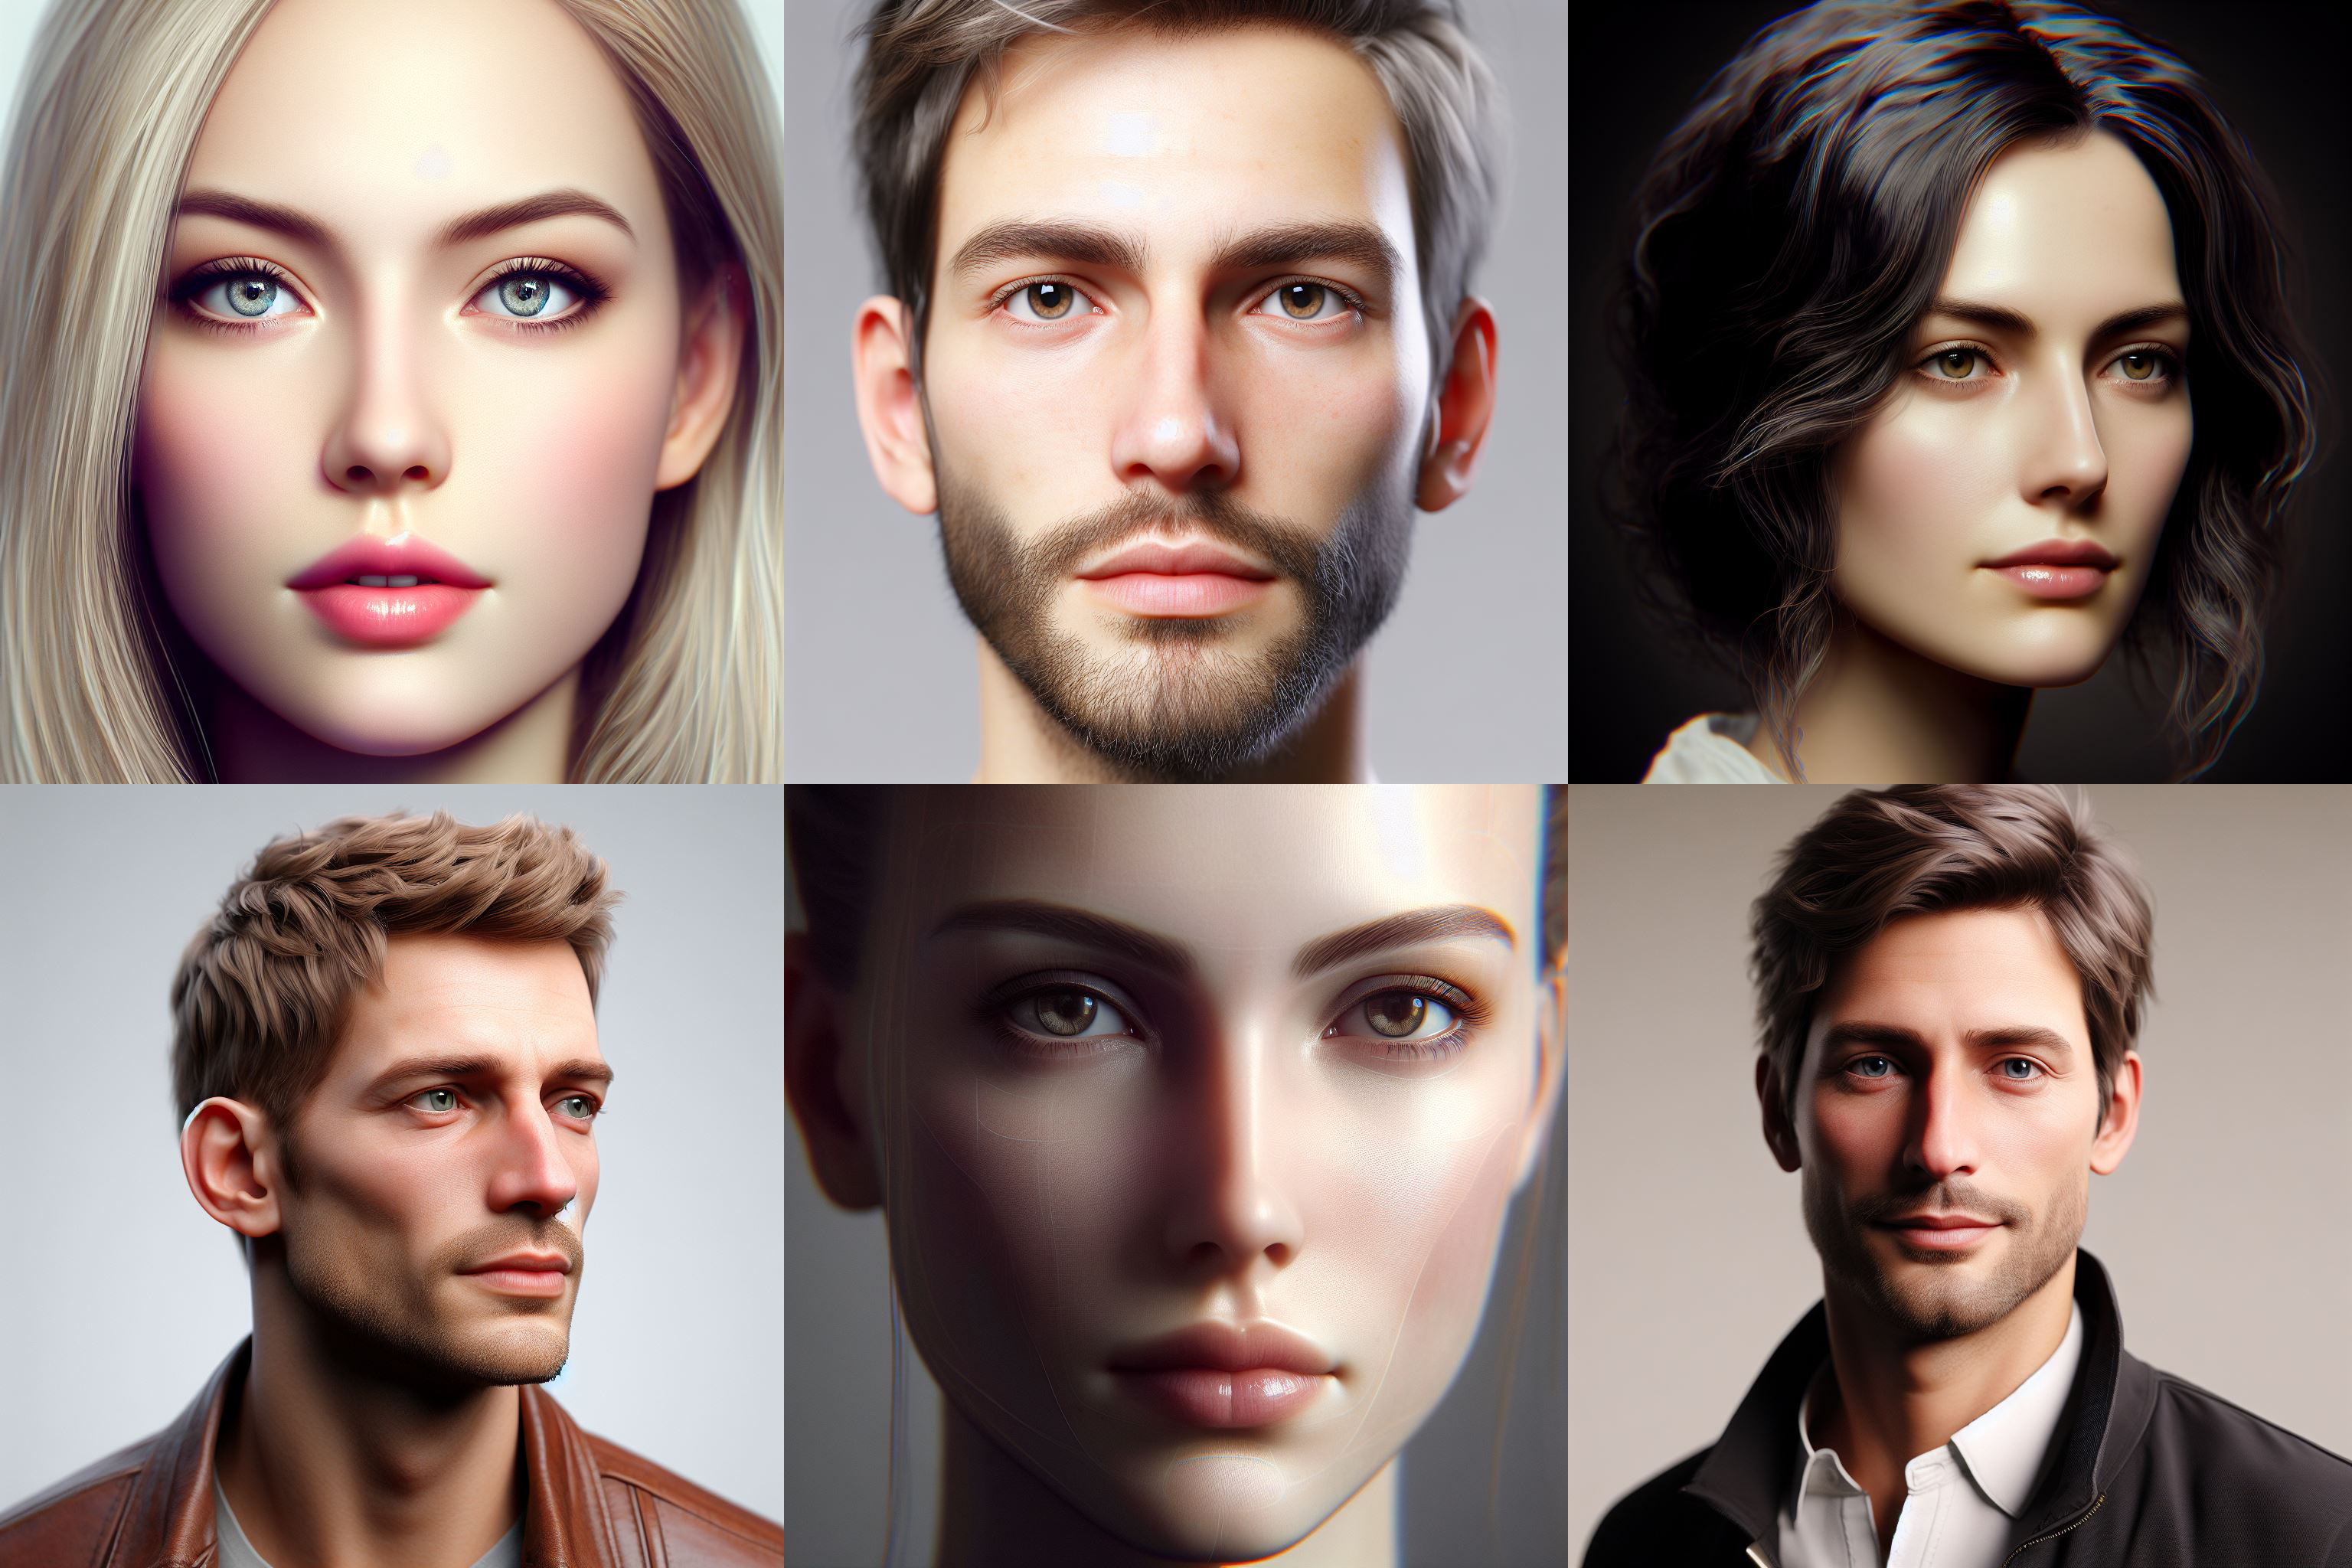 Menschen vertrauen weißen Gesichtern auf generierten Fotos eher als auf echten Fotos - Studie